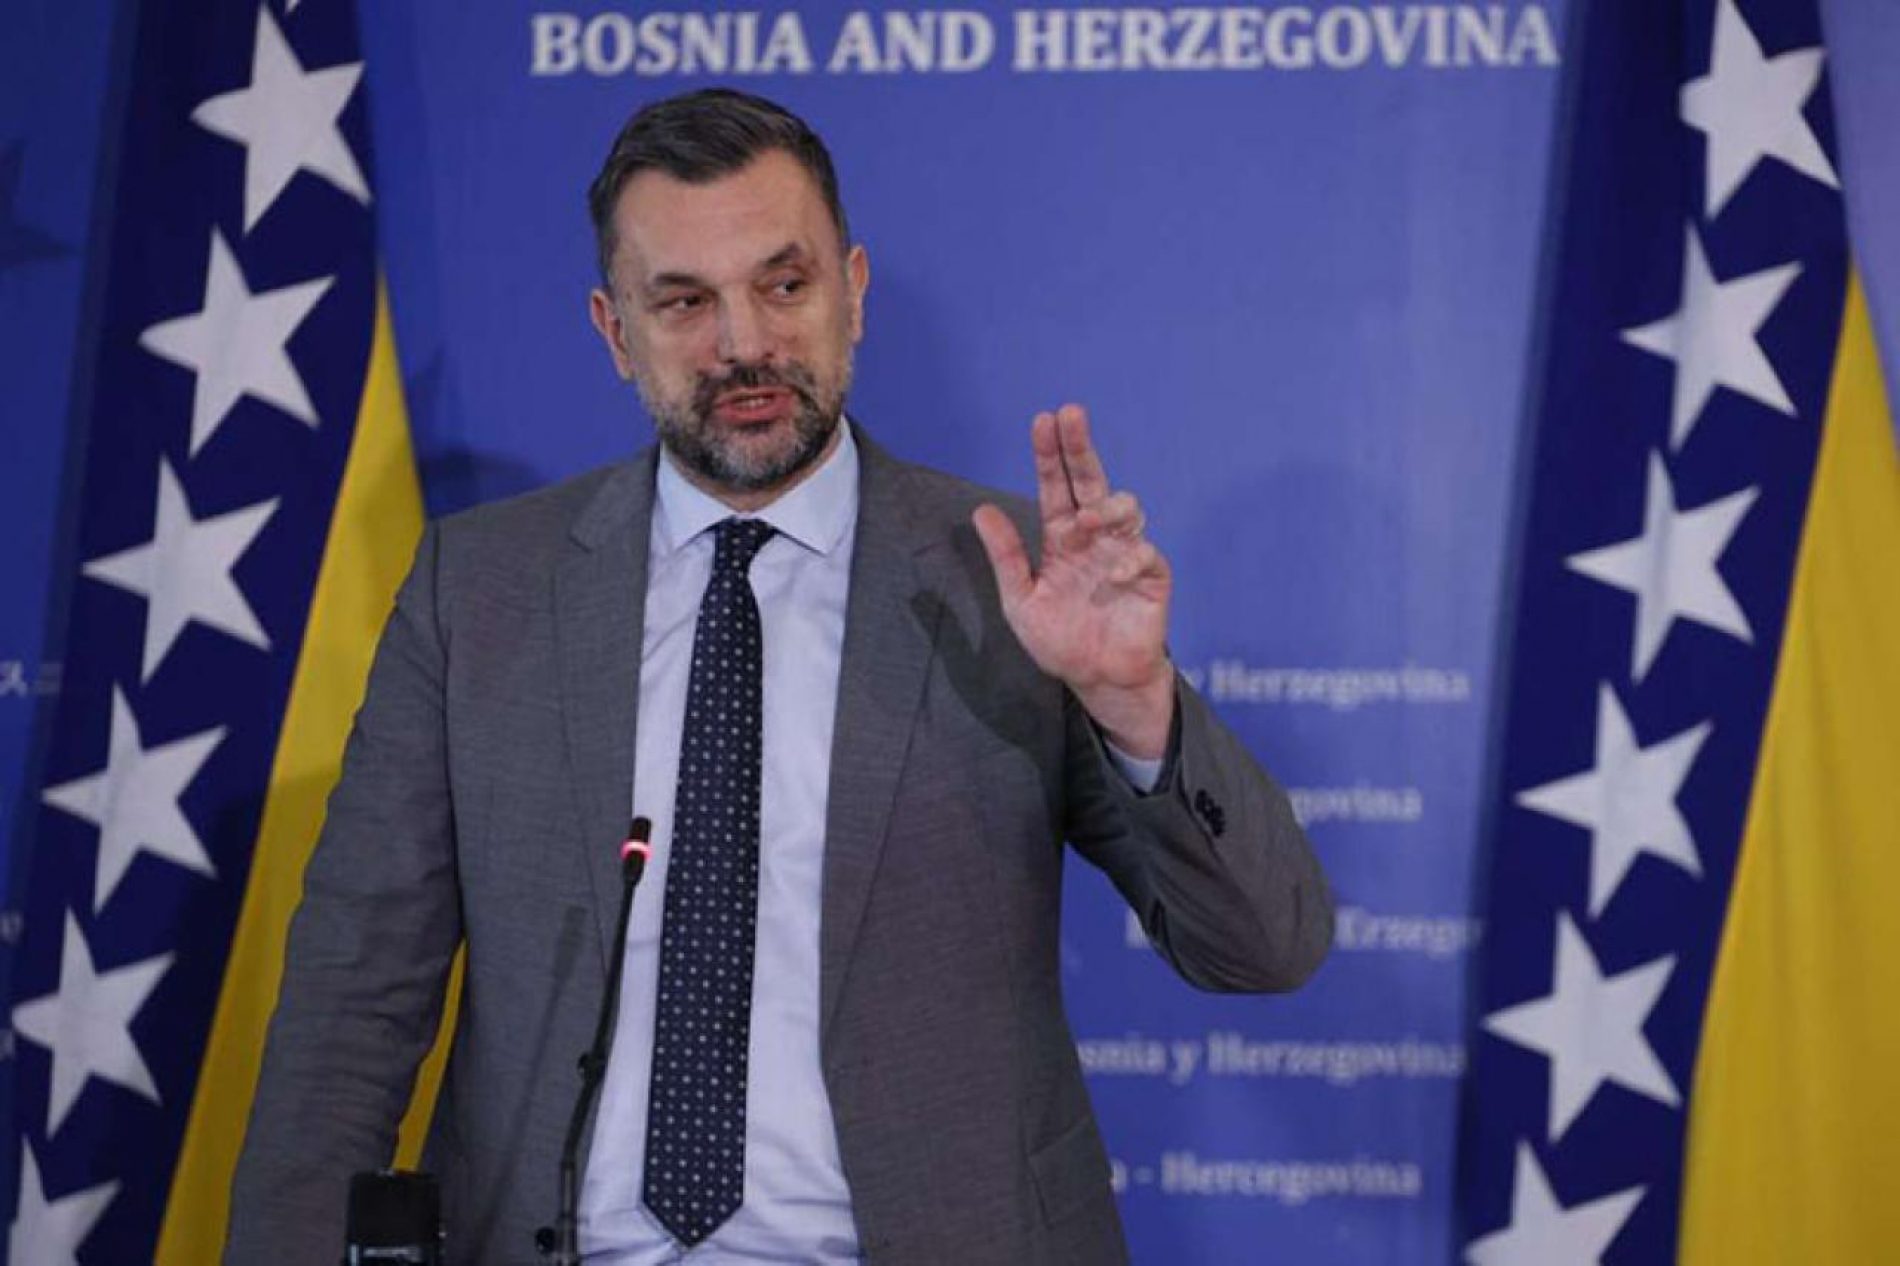 BH novinari: Konaković mora poštovati medijske slobode i prava novinara/ki